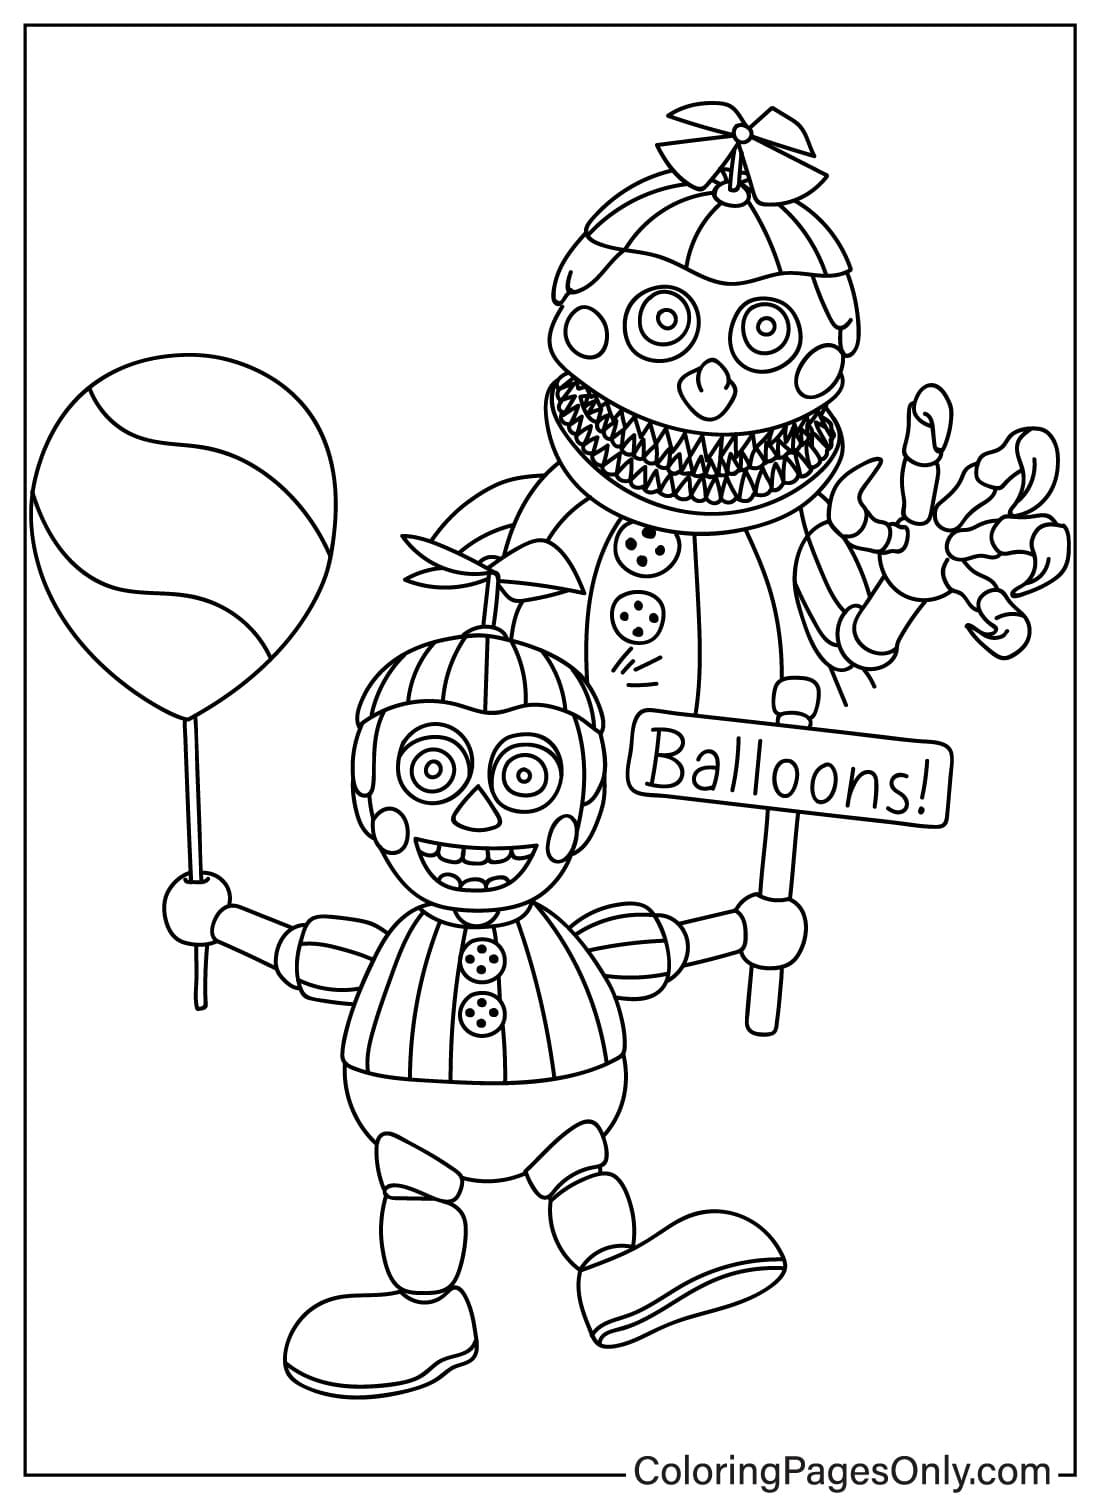 Página para colorear gratis de Balloon Boy de Balloon Boy